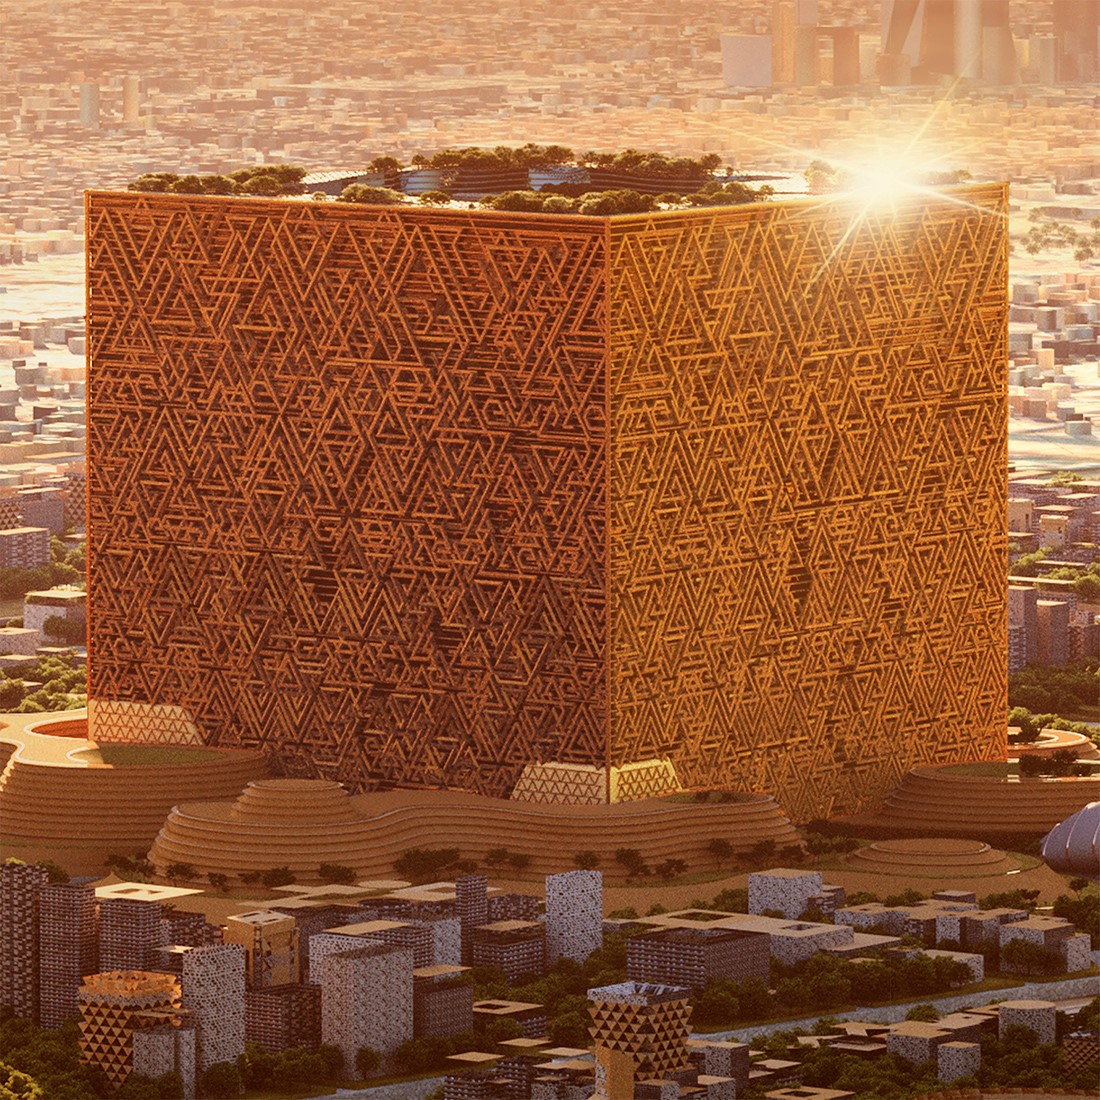 Саудовская Аравия представила небоскрёб в форме куба в Эр-Рияде⁠⁠